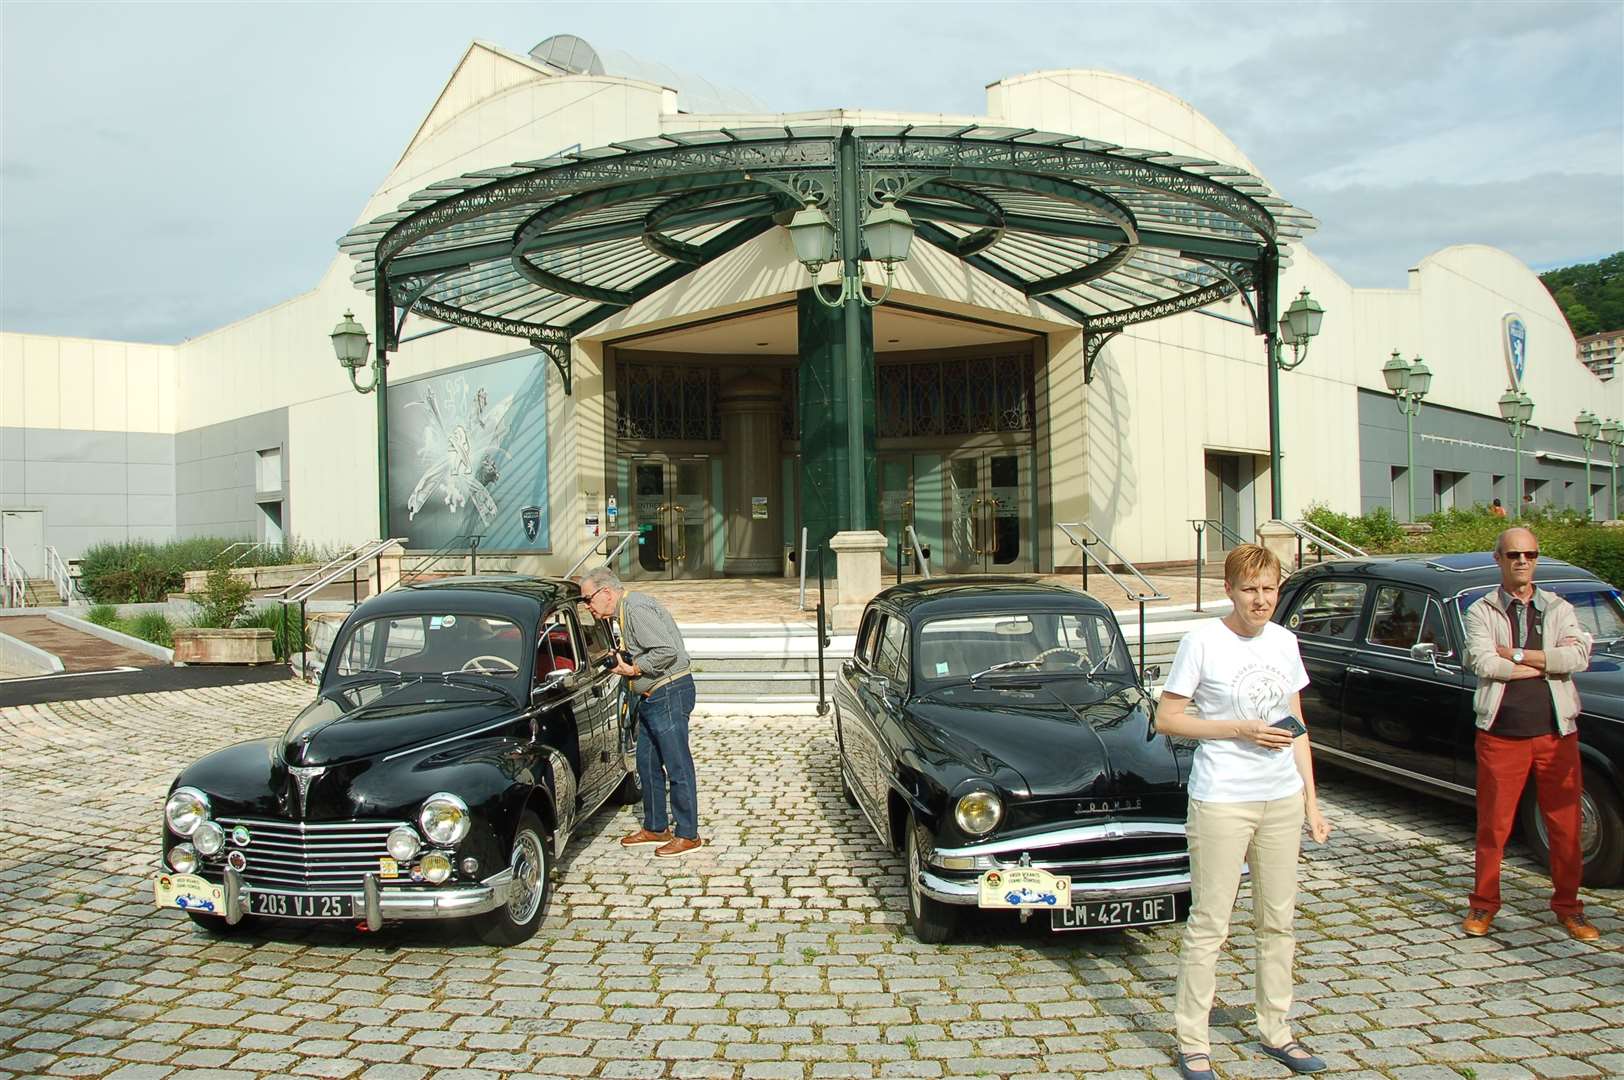 The Peugeot museum at Sochaux.